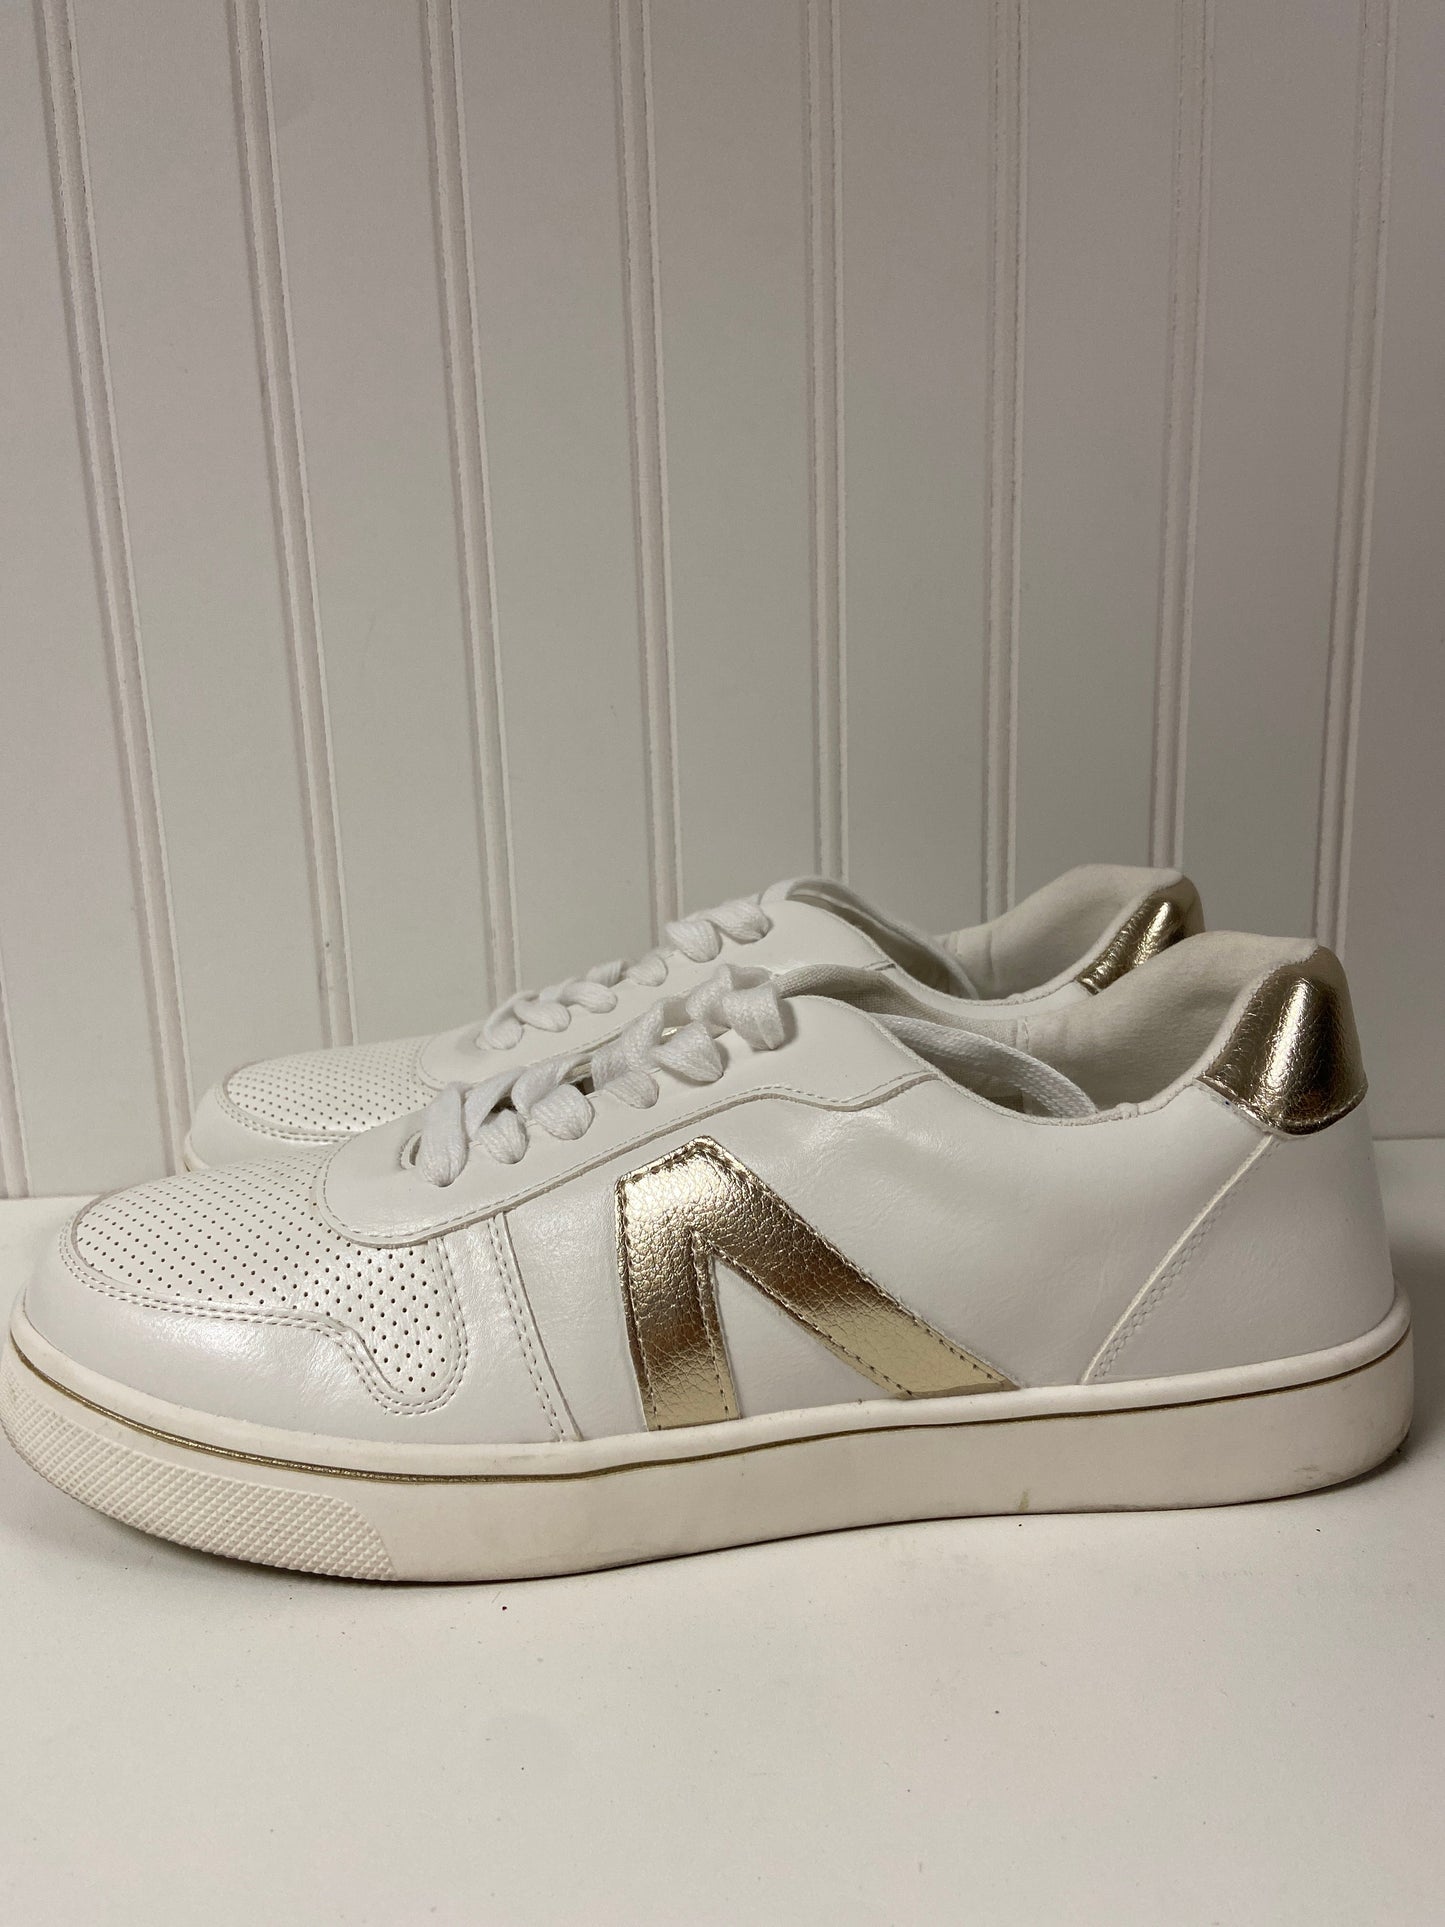 White Shoes Sneakers Mia, Size 9.5